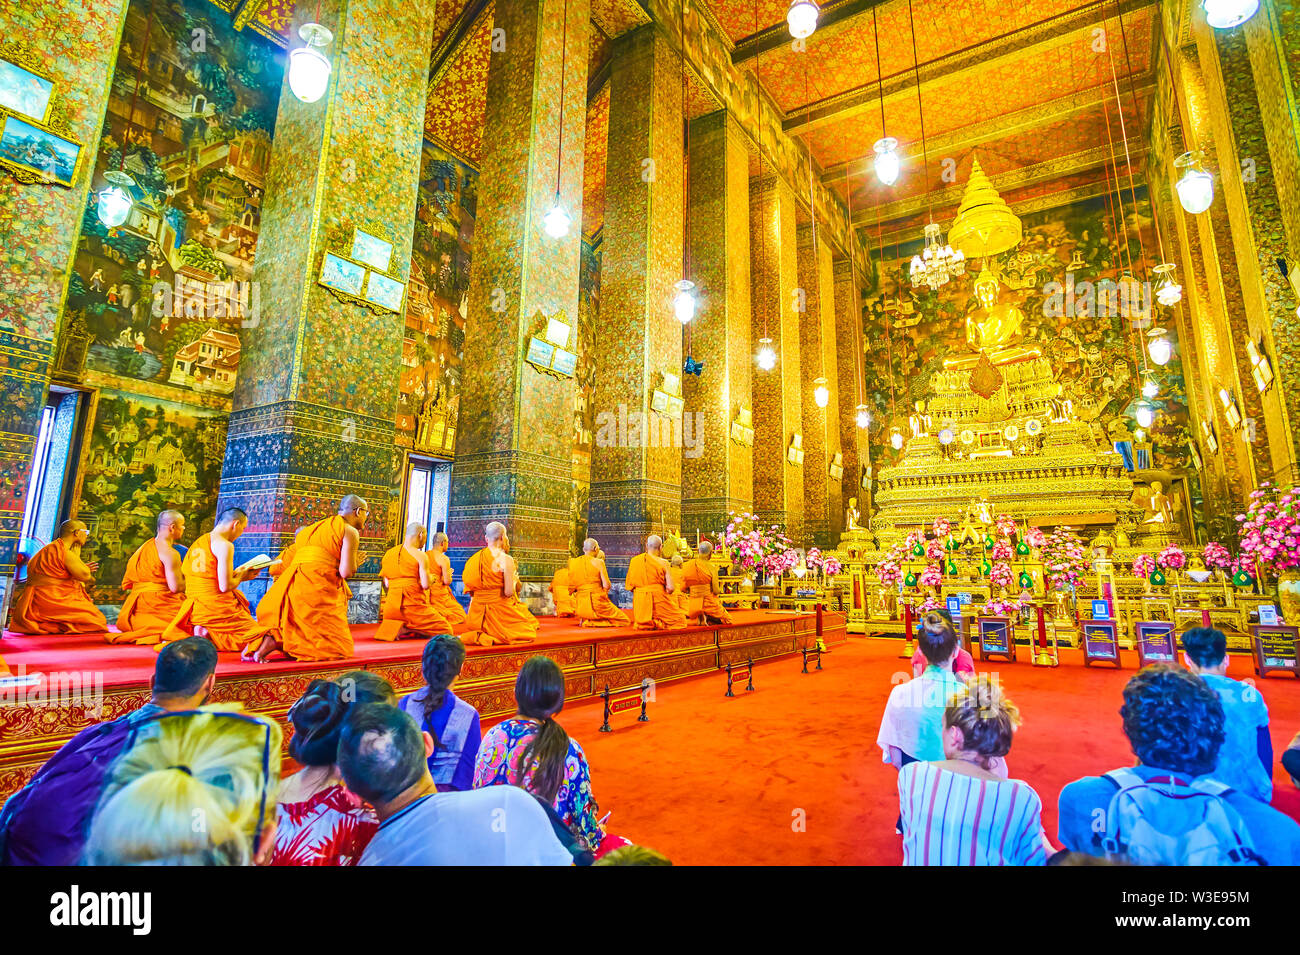 BANGKOK, THAILAND - 22 April, 2019: Der ubosot mit goldenen Buddha im Wat Pho während der beten Komplex, Mönch auf dem Podest auf der rechten si Sitzen Stockfoto